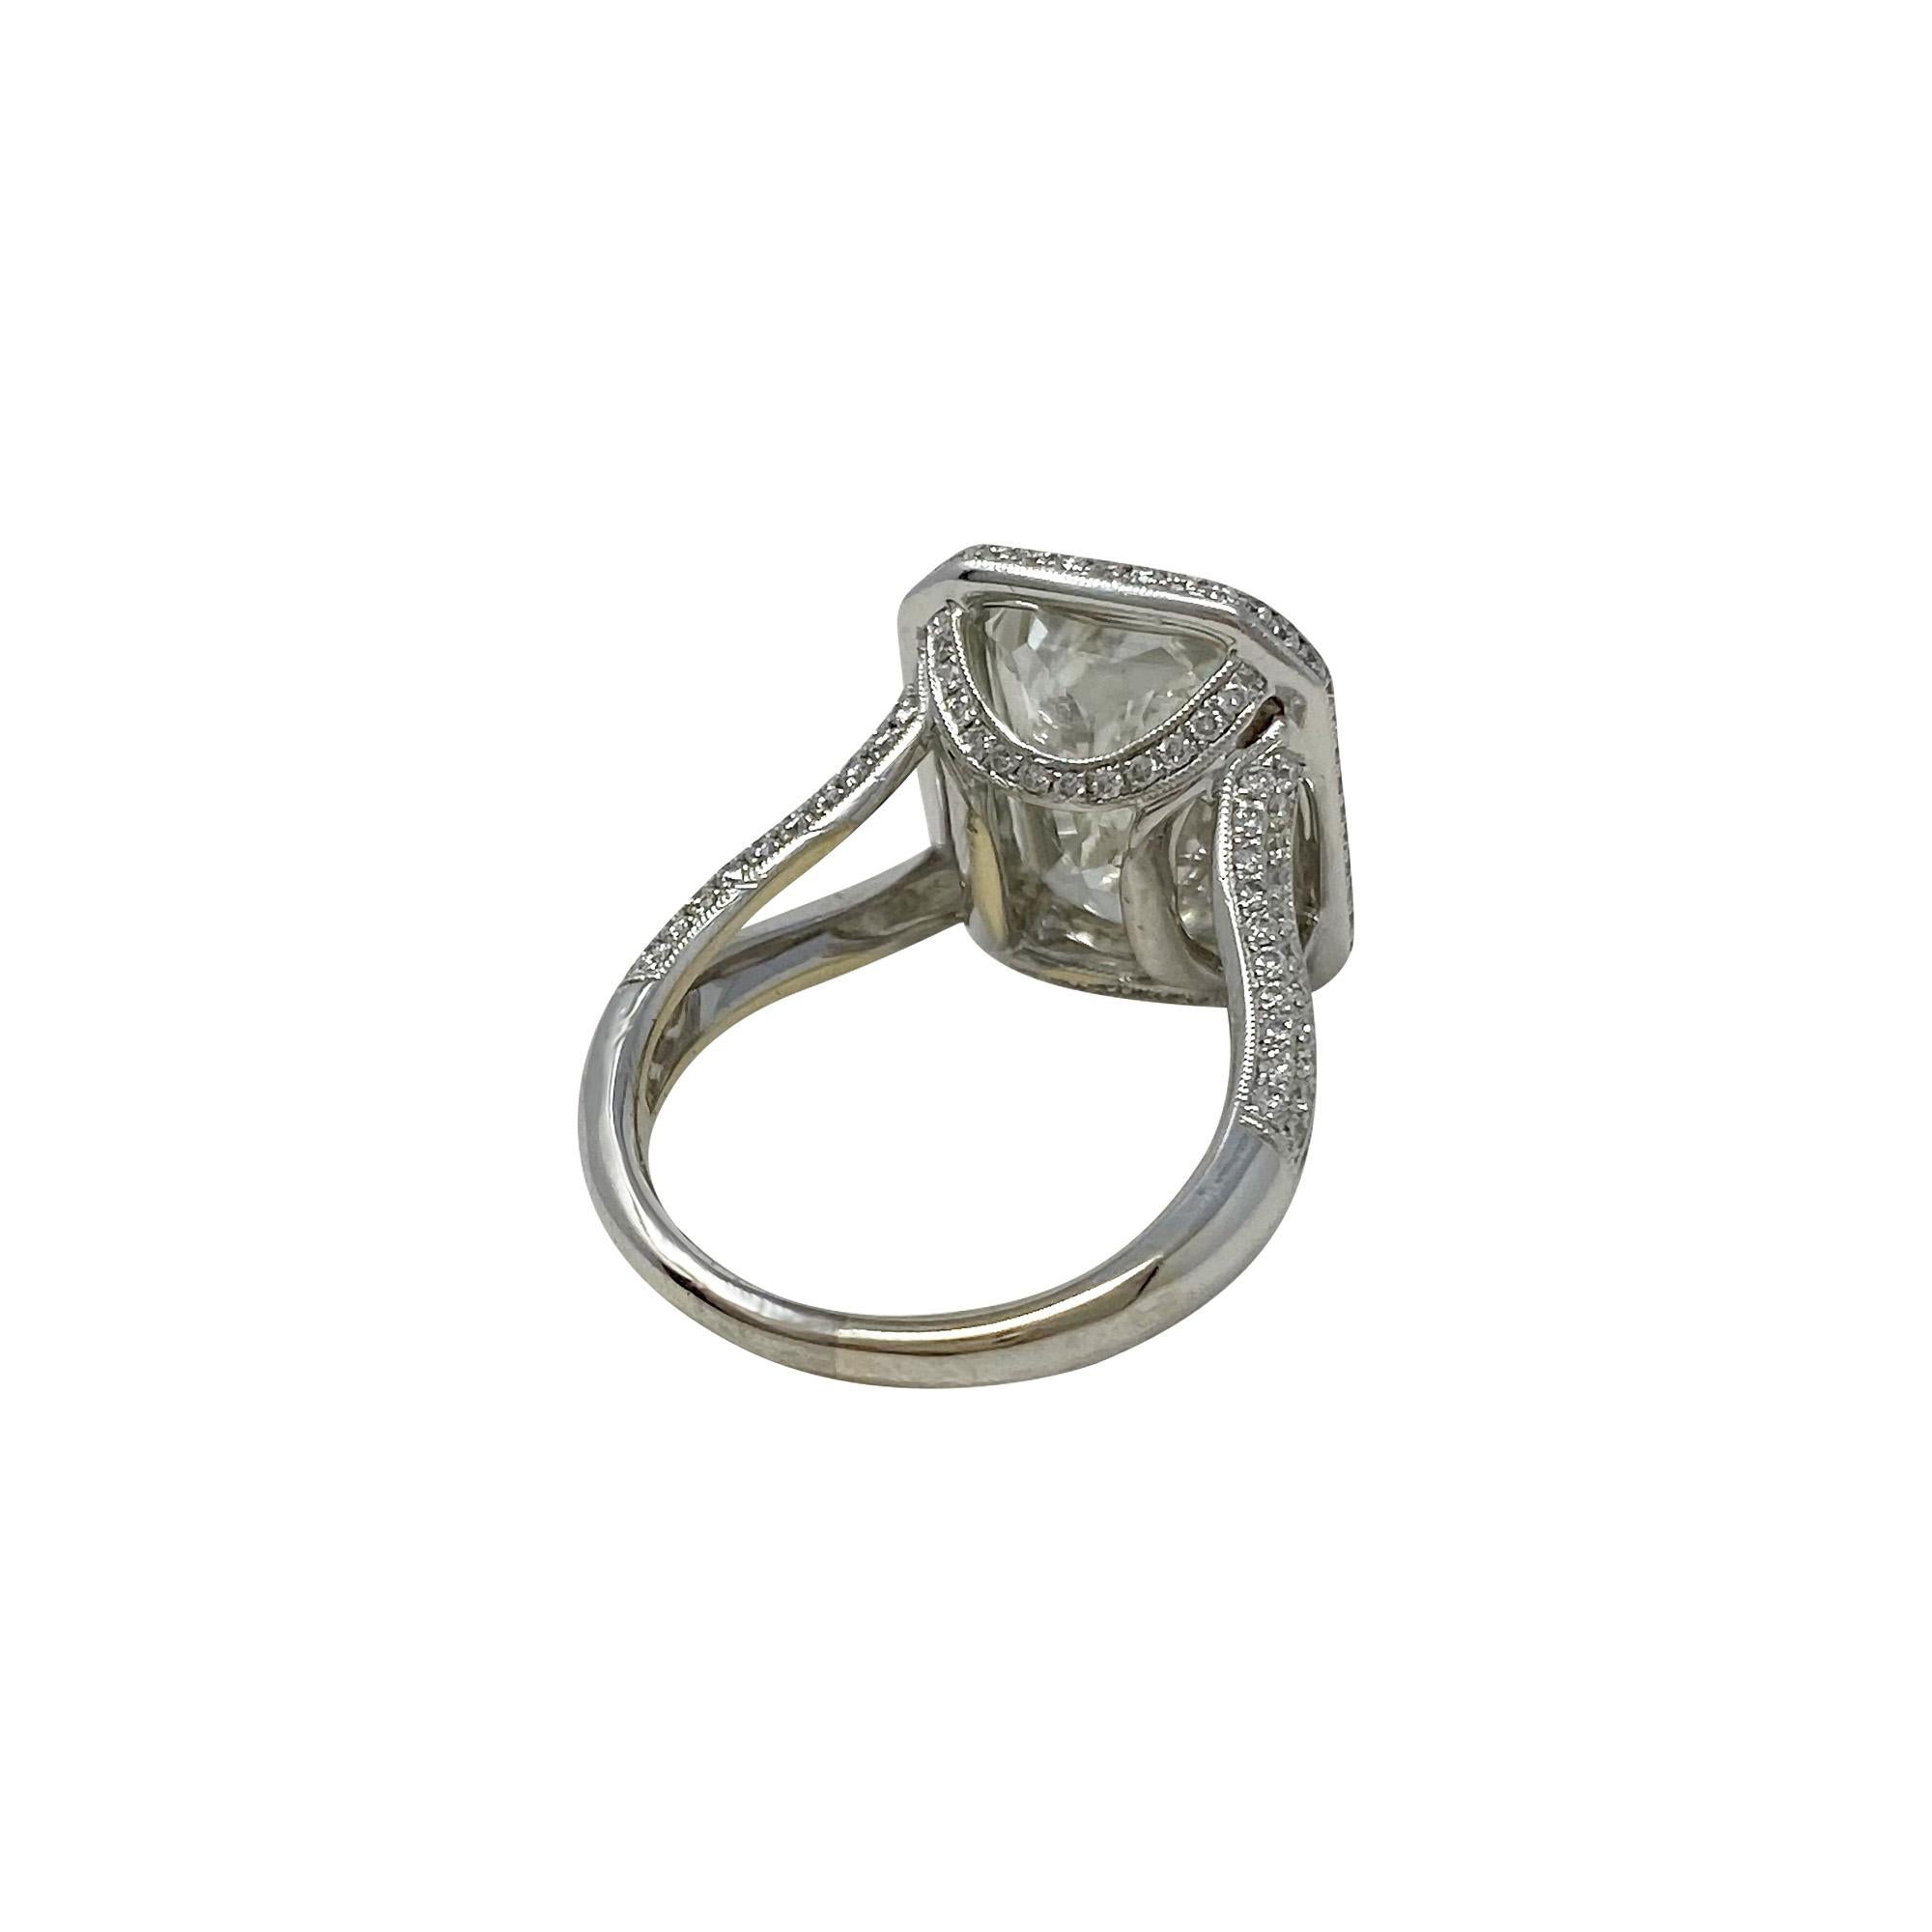 Emerald Cut GIA Certified 7.50 Carat Diamond Ring in 18 Karat White Gold